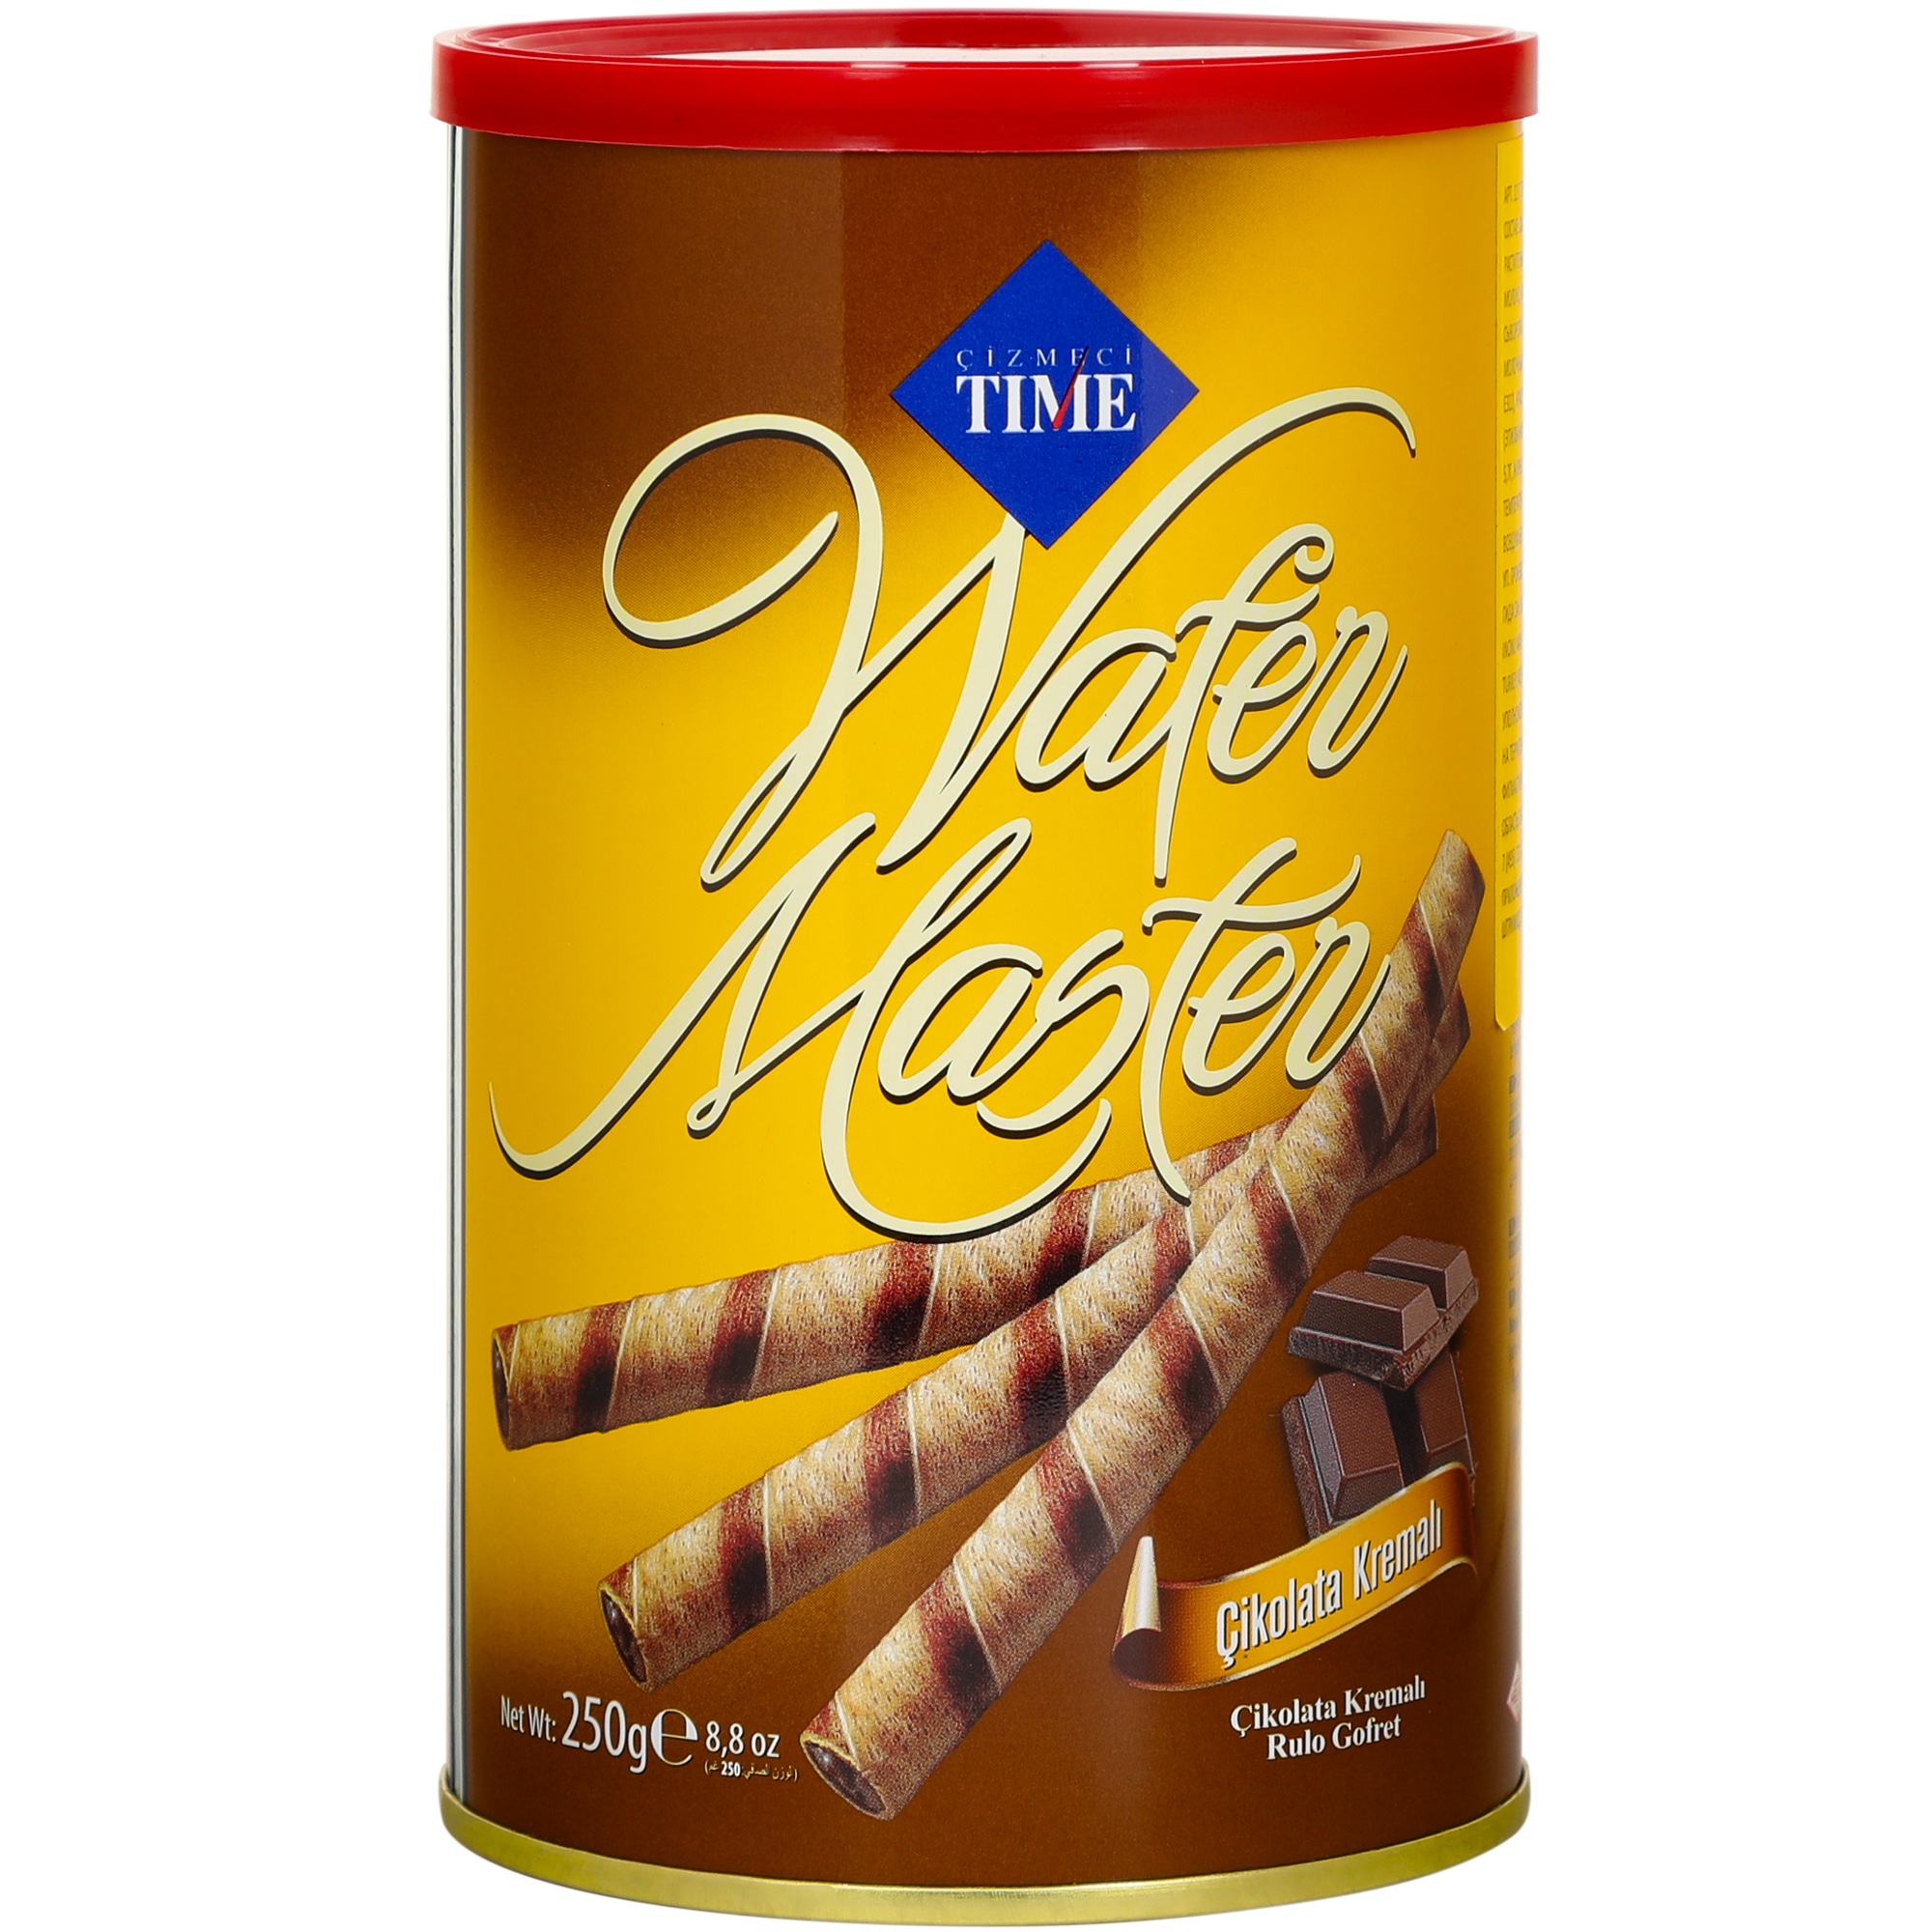 Трубочки Cizmeci Time вафельные wafer master шоколад, 250 г трубочки